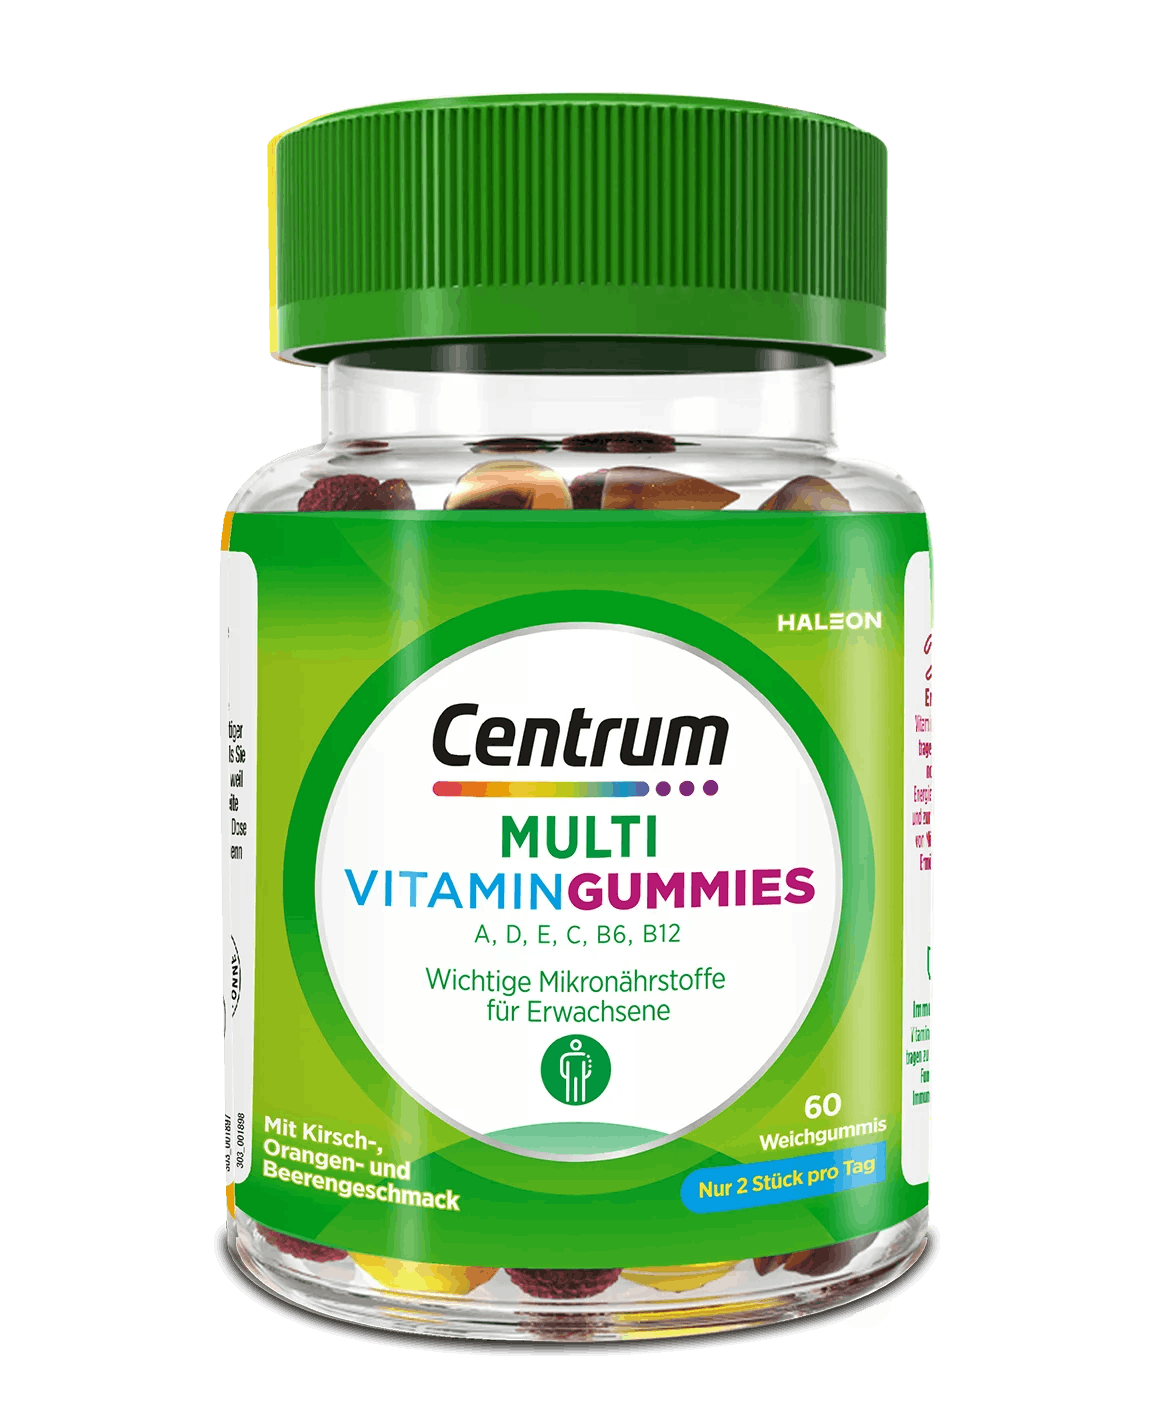 Centrum Multi Vitamin Gummies Packung auf weißem Hintergrund